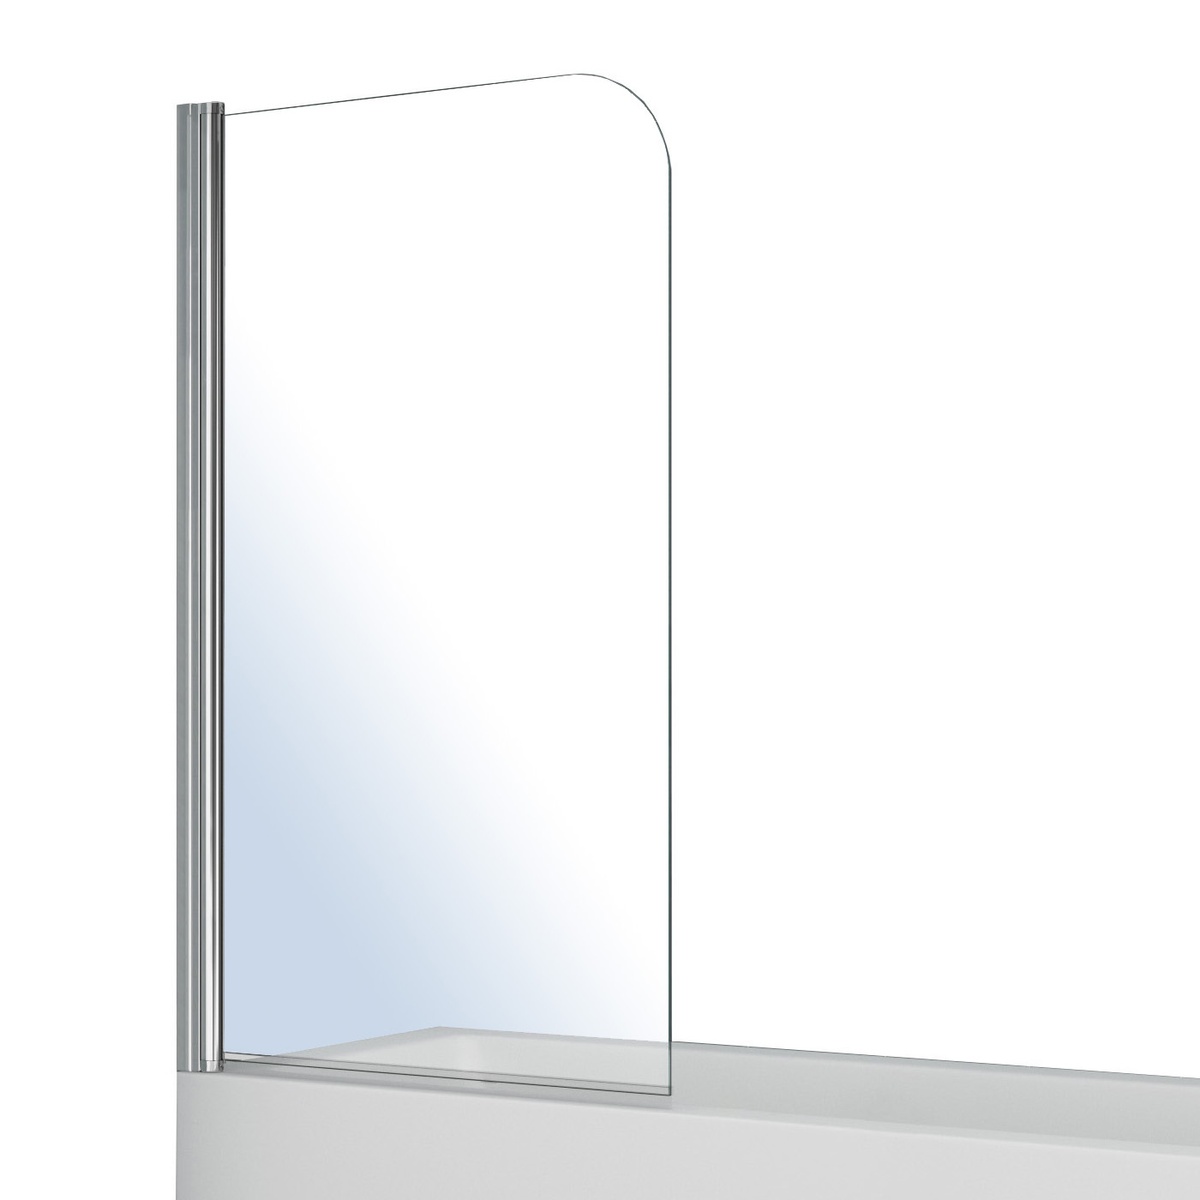 Шторка стеклянная для ванной оборачиваемая распашная 140см x 80см VOLLE стекло прозрачное 5мм профиль хром 10-11-100